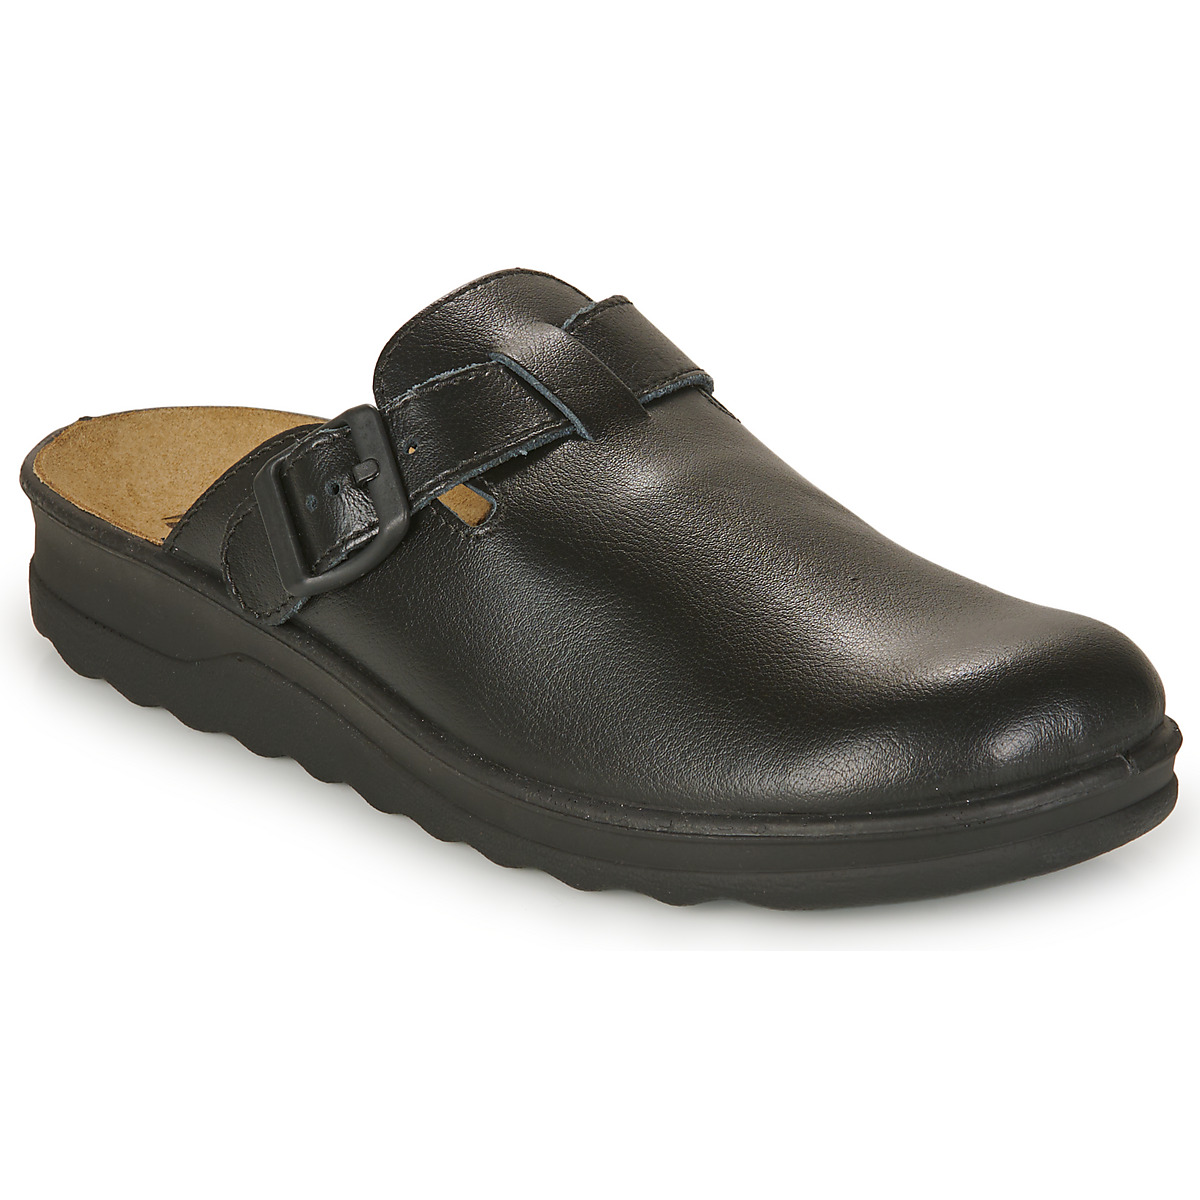 Westland -Heren - zwart - pantoffels & slippers - maat 42